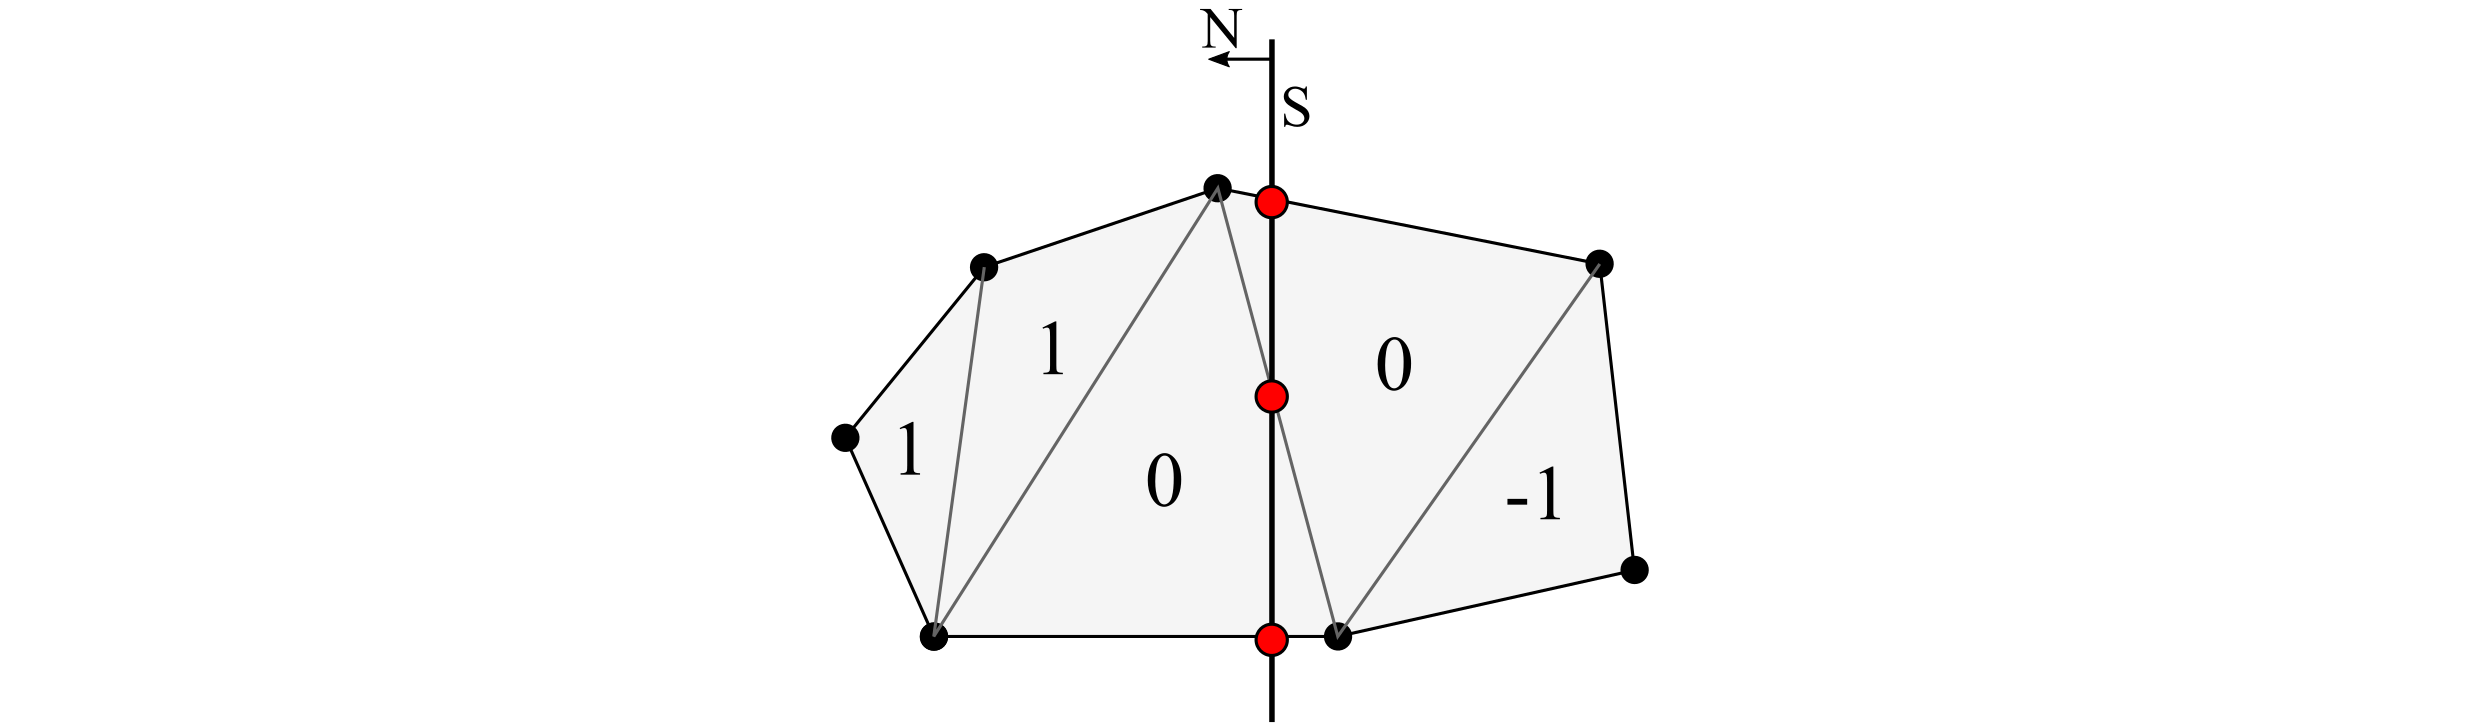 Схема маркировки треугольников